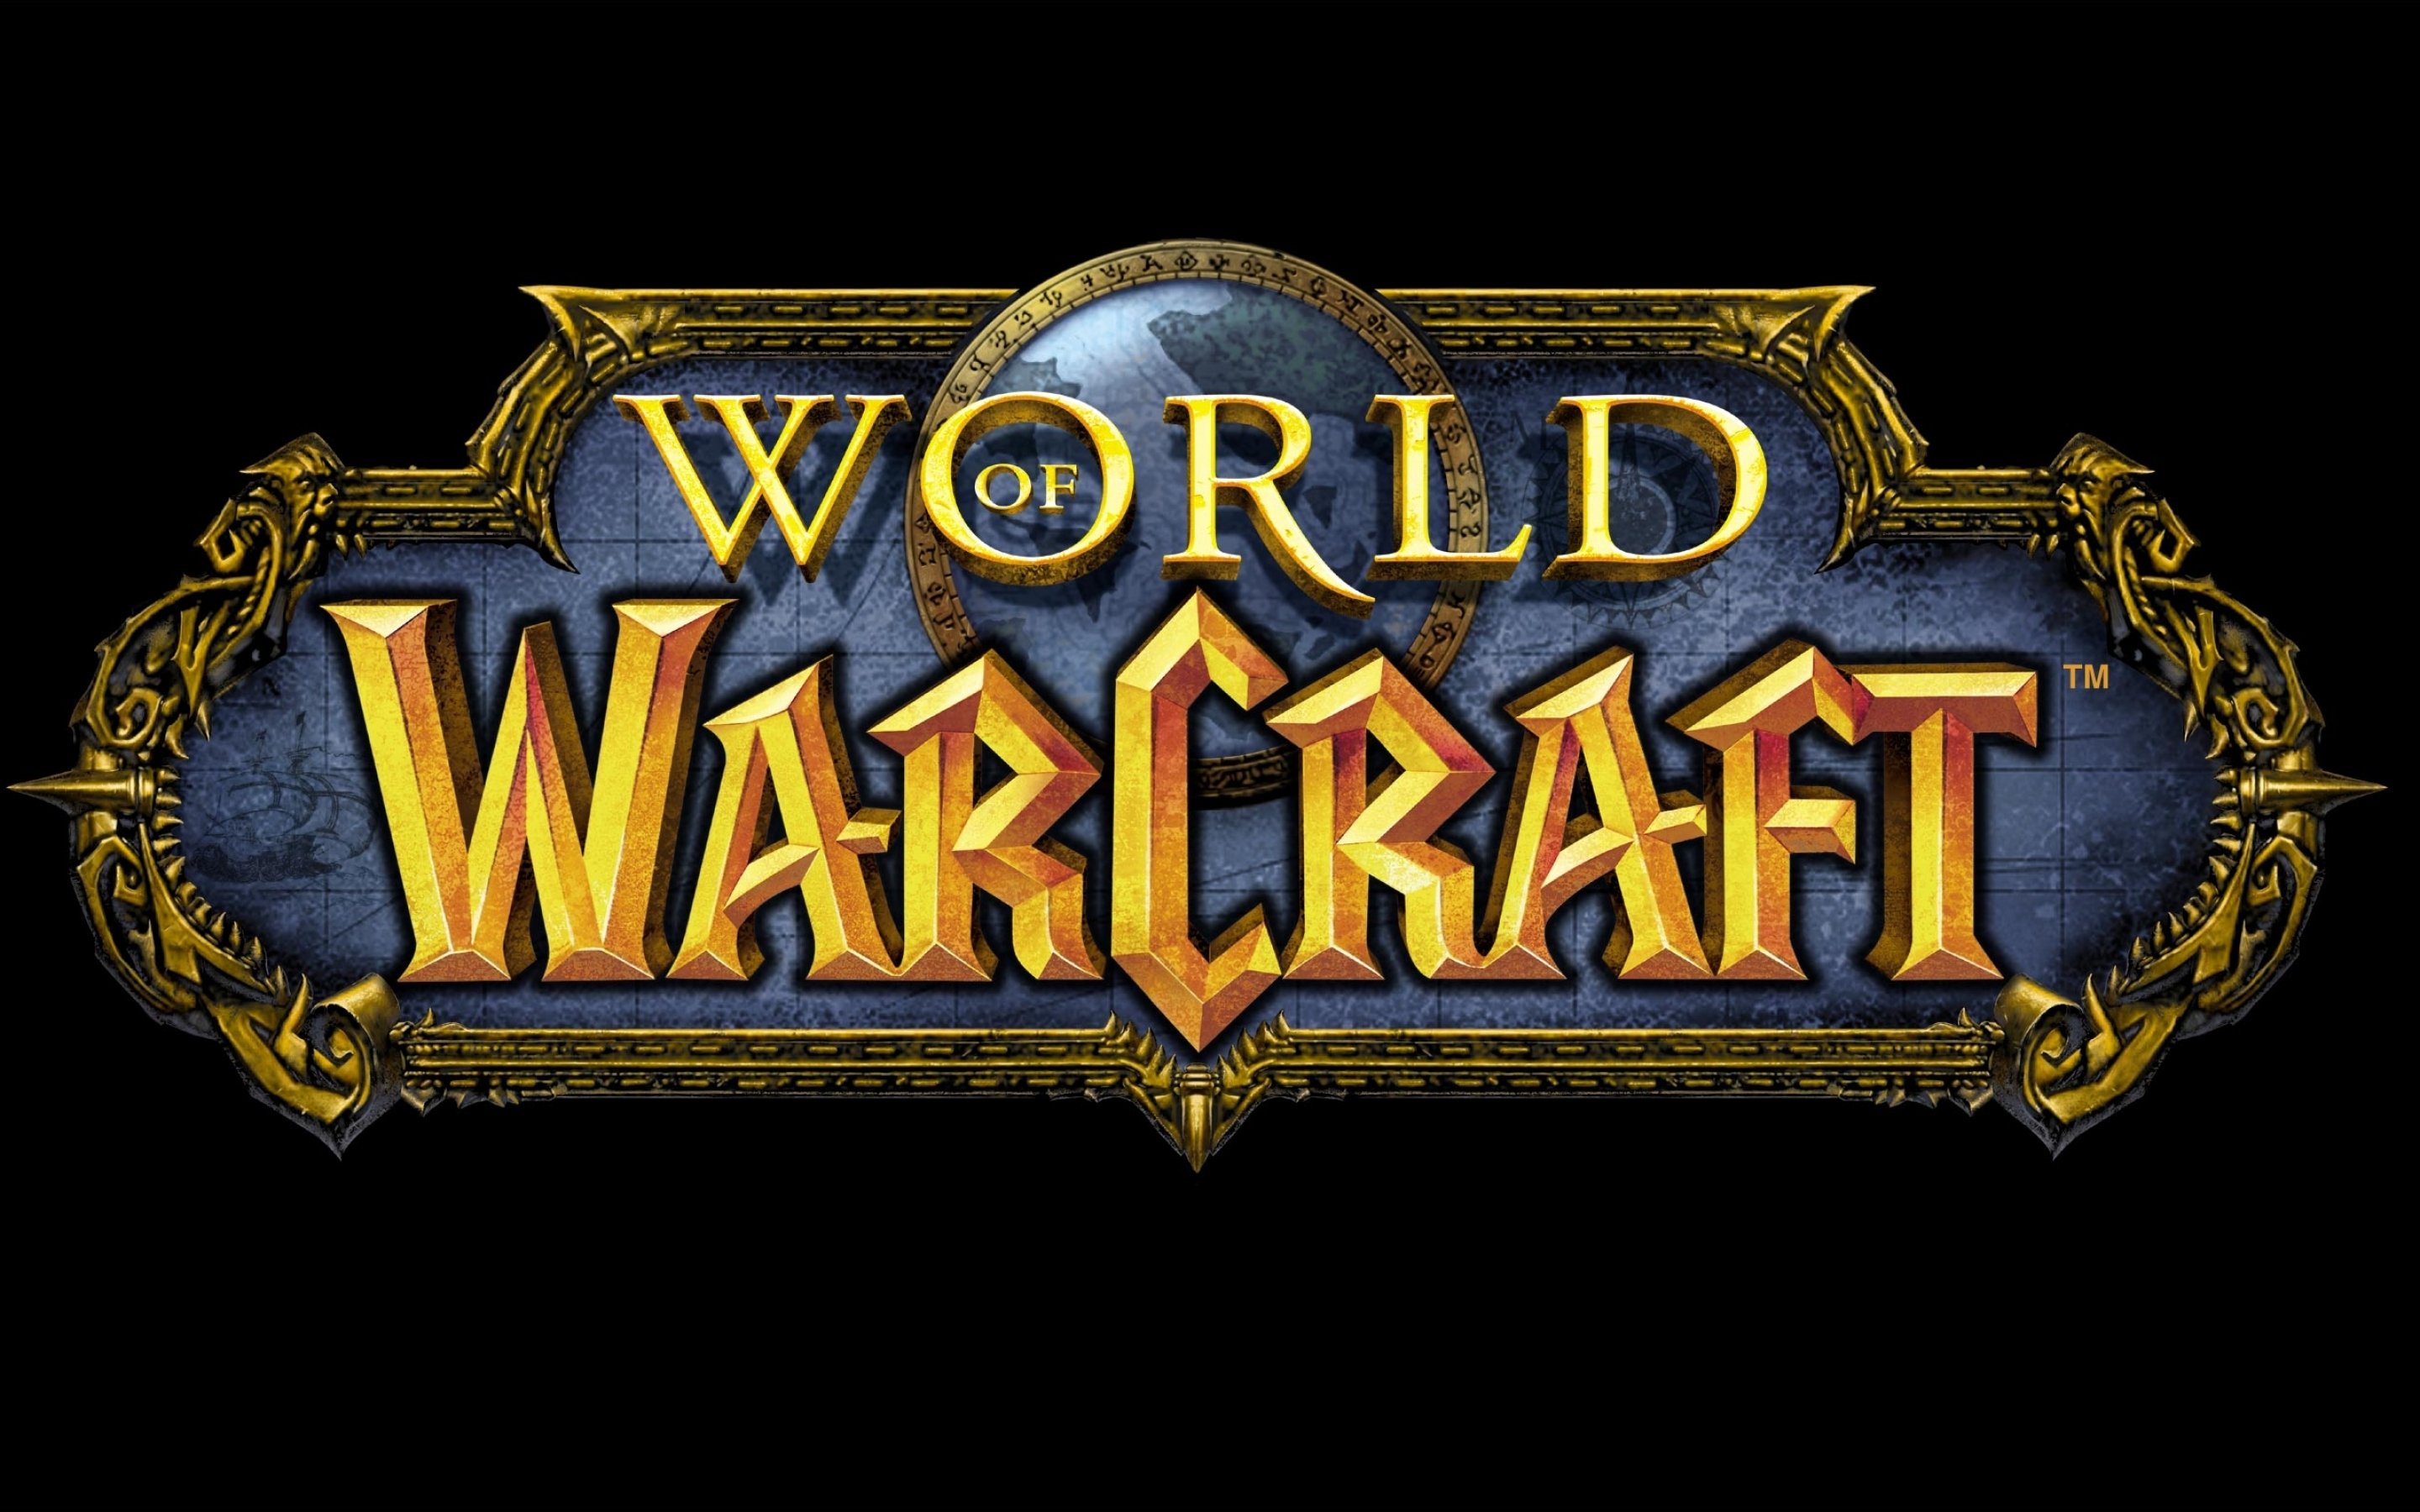 world, Warcraft, Fantasy, Adventure, Artwork, Warrior Wallpaper